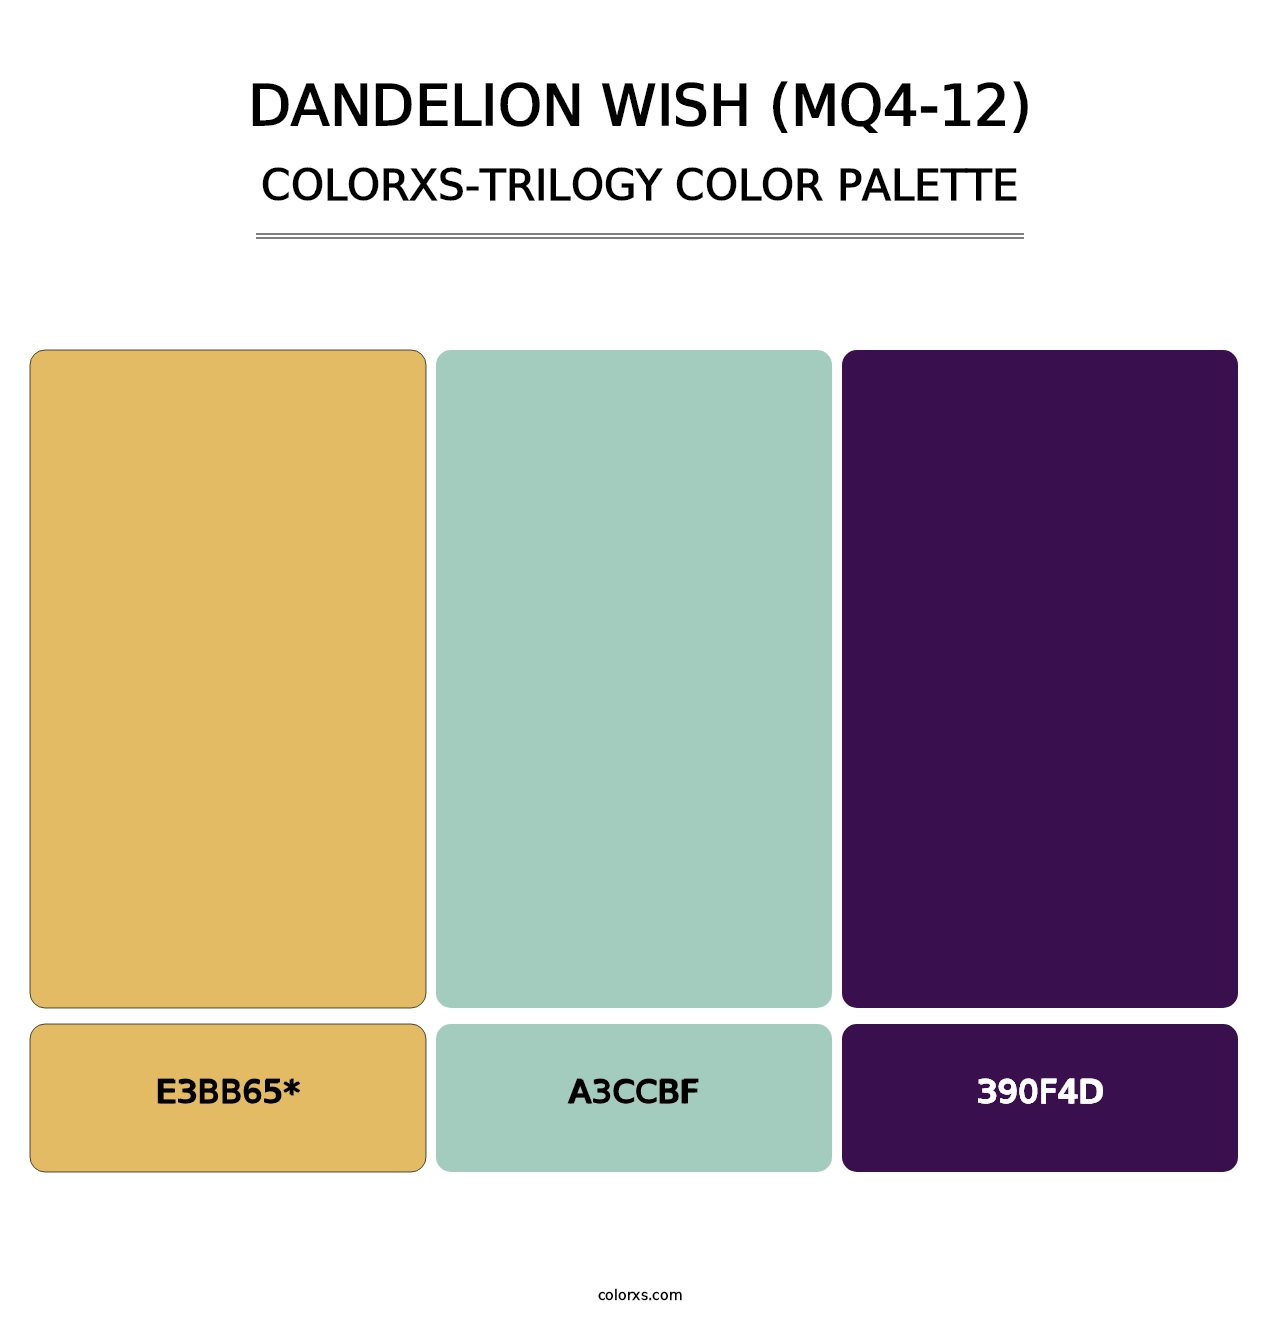 Dandelion Wish (MQ4-12) - Colorxs Trilogy Palette